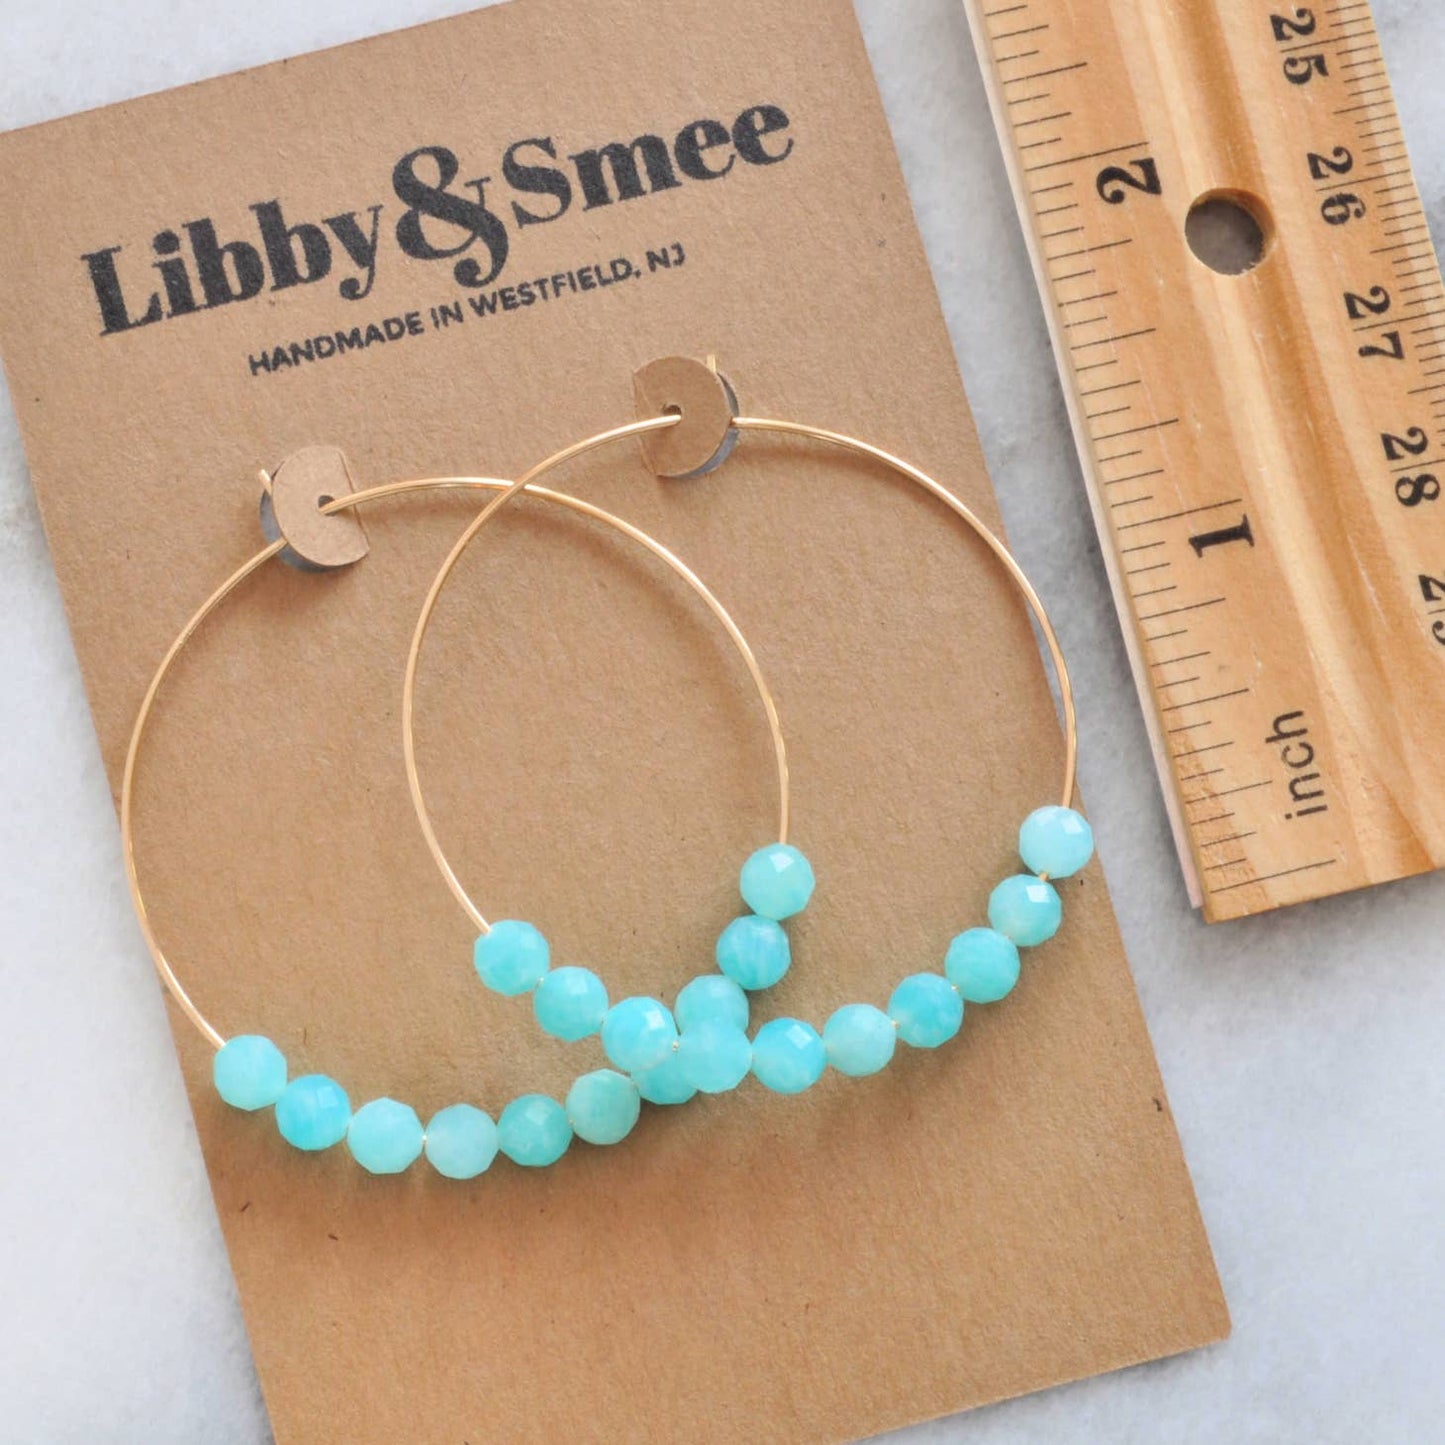 Libby & Smee Hoop Earrings (3 options)